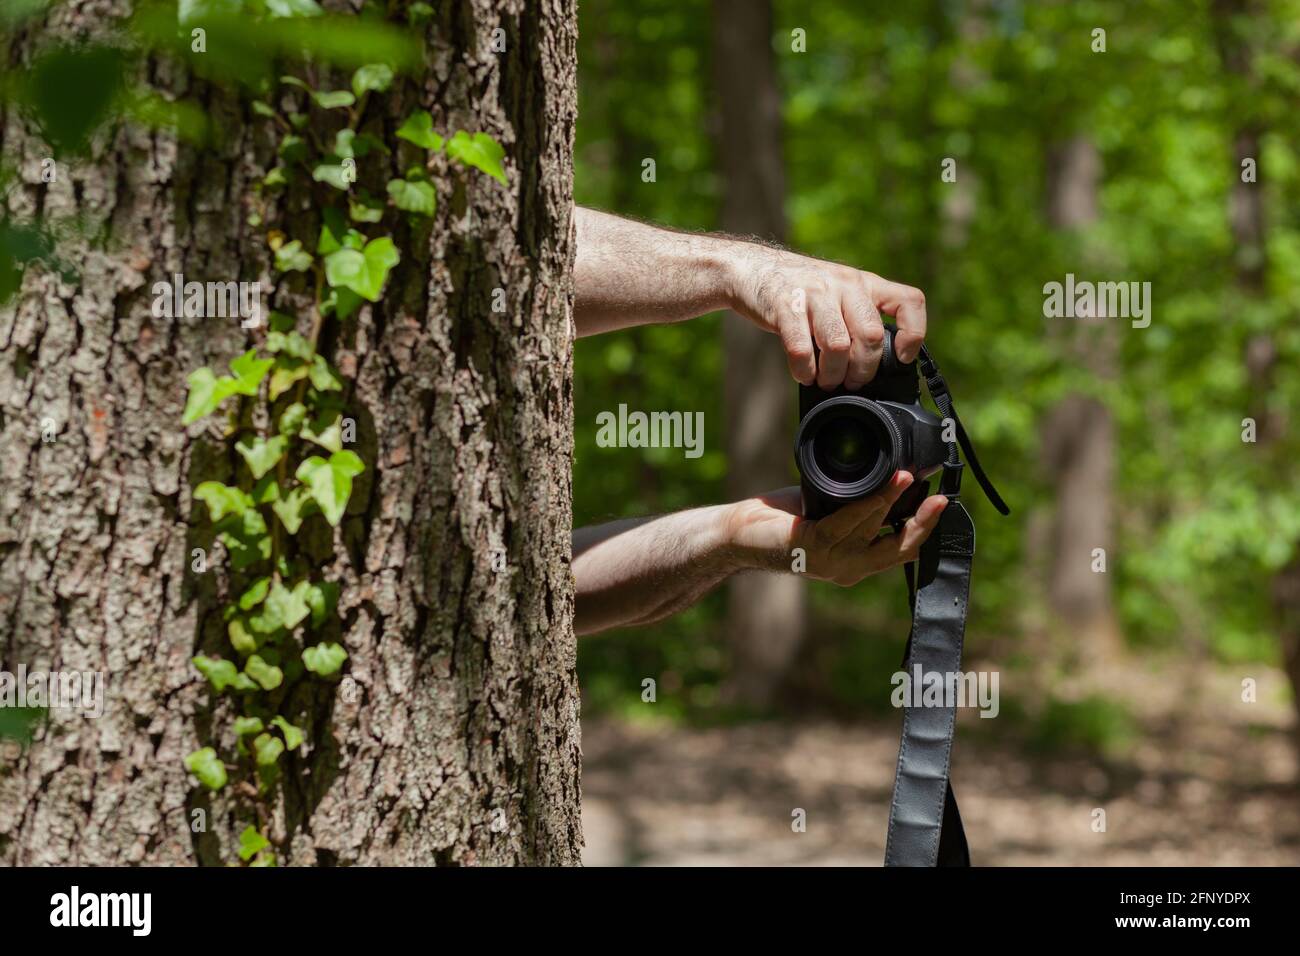 Fotografieren Sie versteckt hinter dem Baum im Wald und gucken Sie mit der Kamera Und heimlich fotografieren Stockfoto